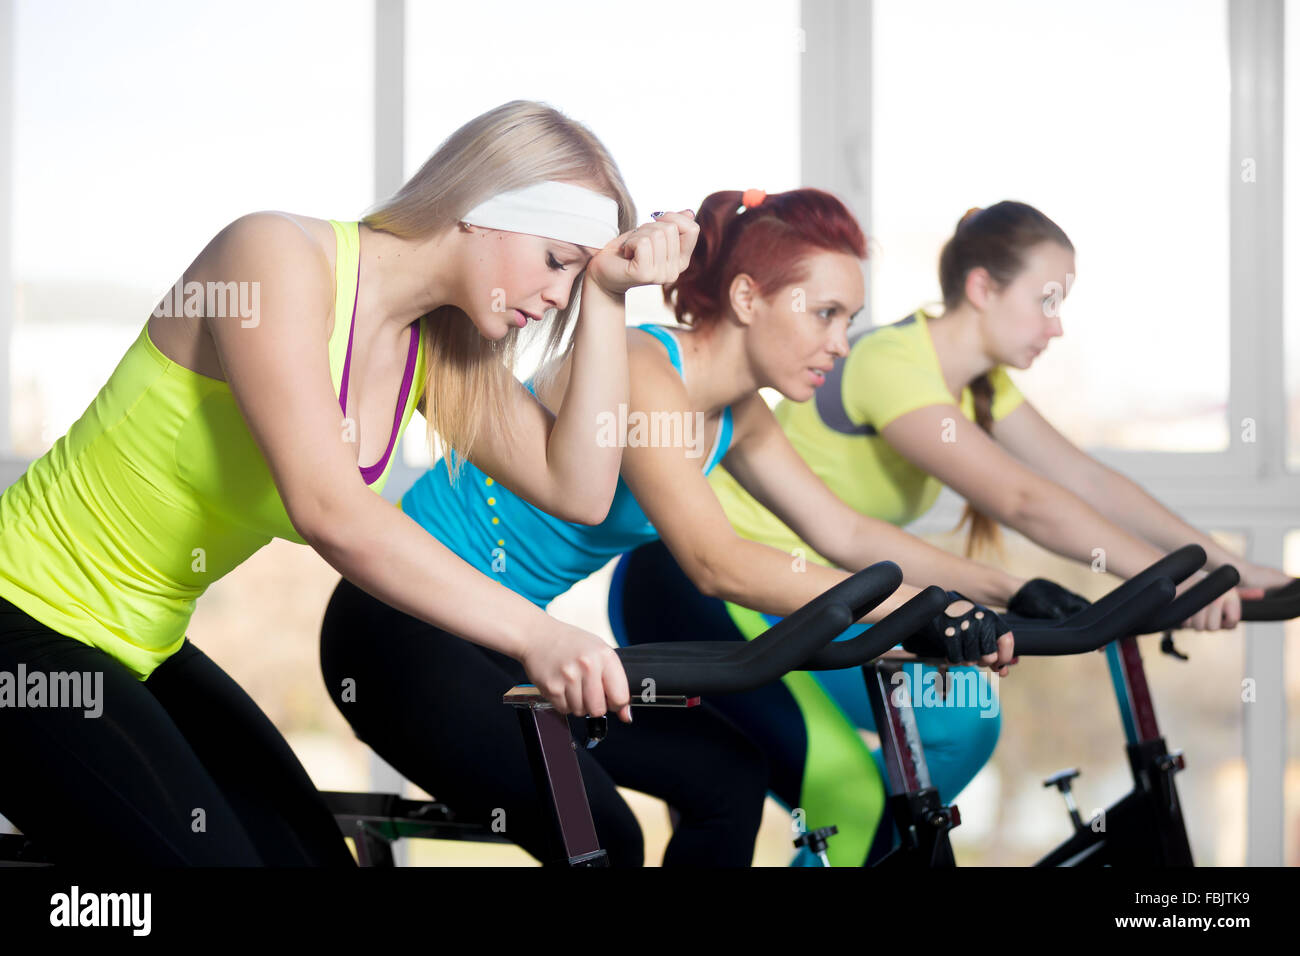 La pratica di fitness, gruppo di montare tre femmine bellissime escursioni in bicicletta in sports club, facendo esercizi cardio per dimagrire in classe Foto Stock